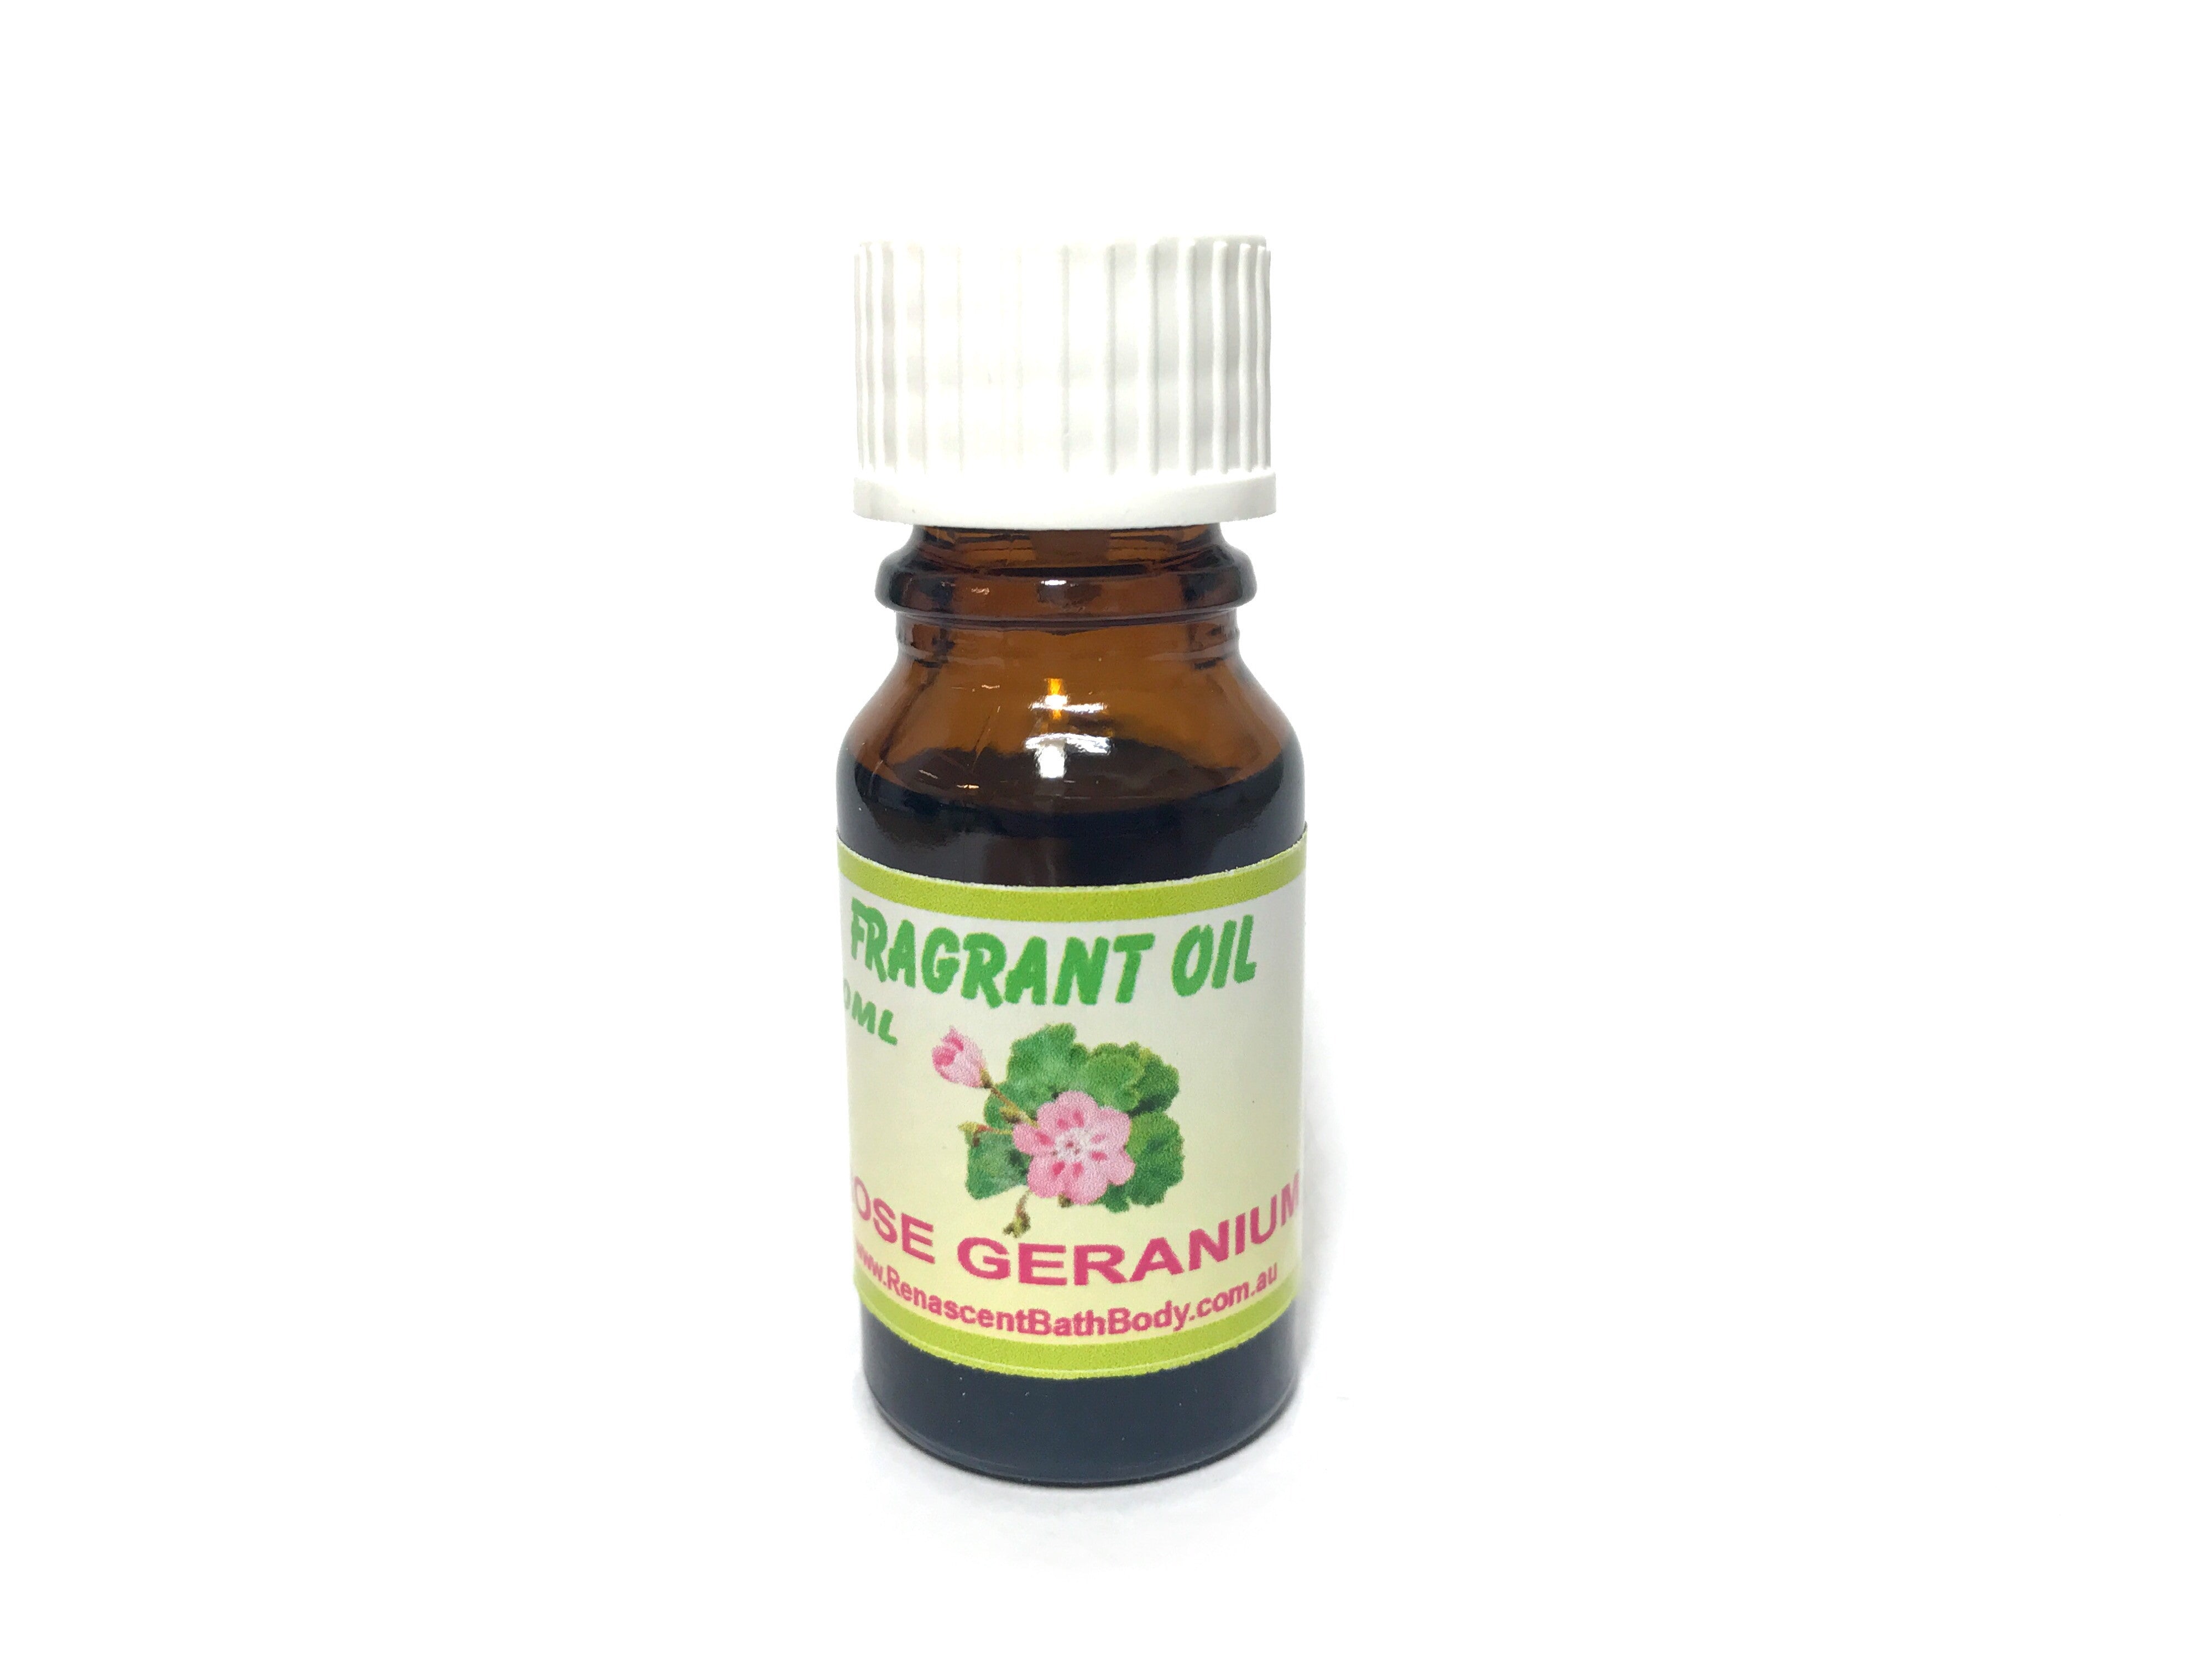 Rose Geranium Fragrant Oil